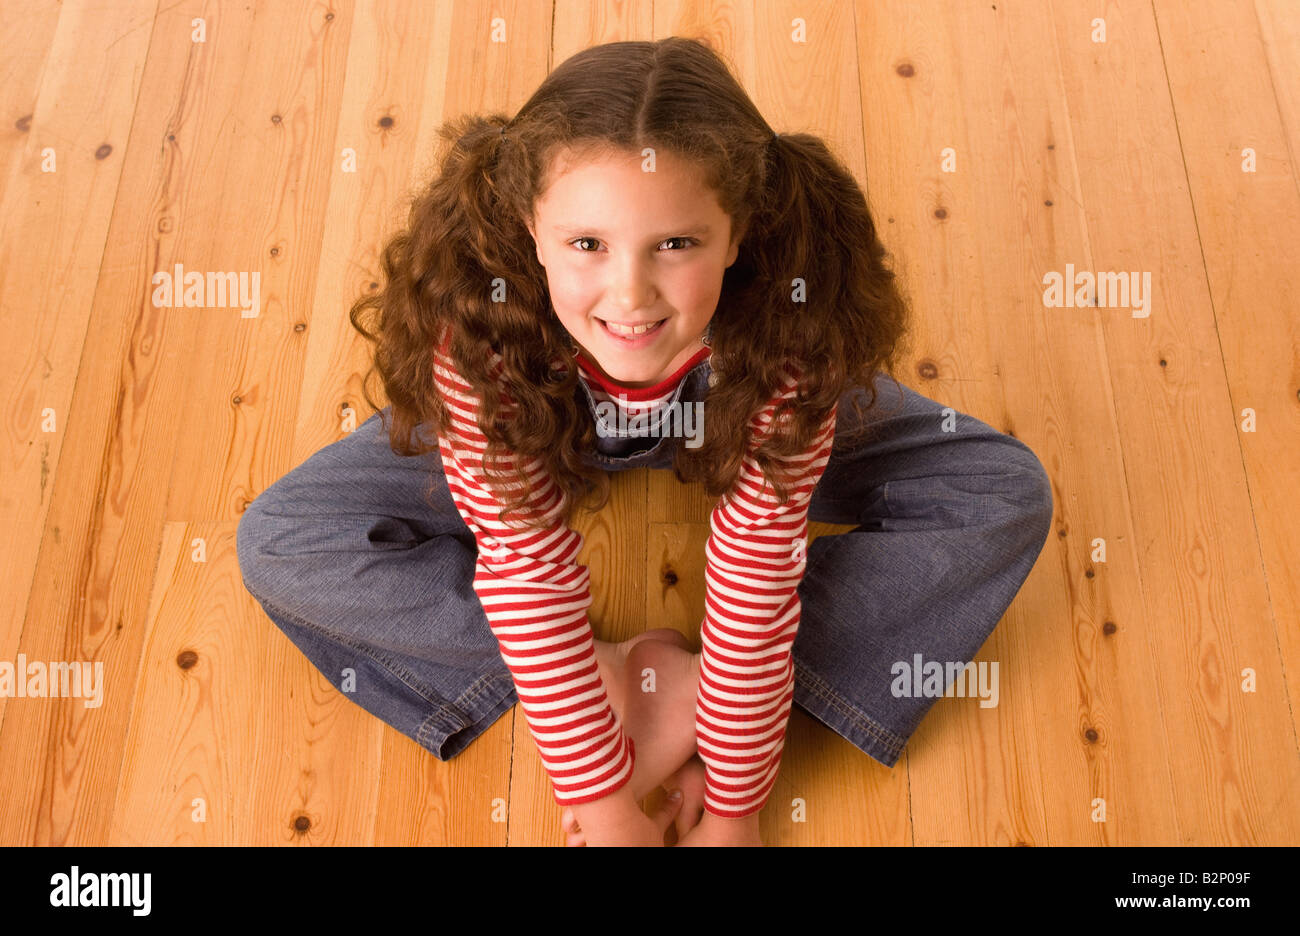 Scatto elevato di una giovane ragazza caucasica con lunghi capelli legati a mazzi, seduta a gambe incrociate su un pavimento di legno, guardando in su sorridendo alla macchina fotografica. Foto Stock